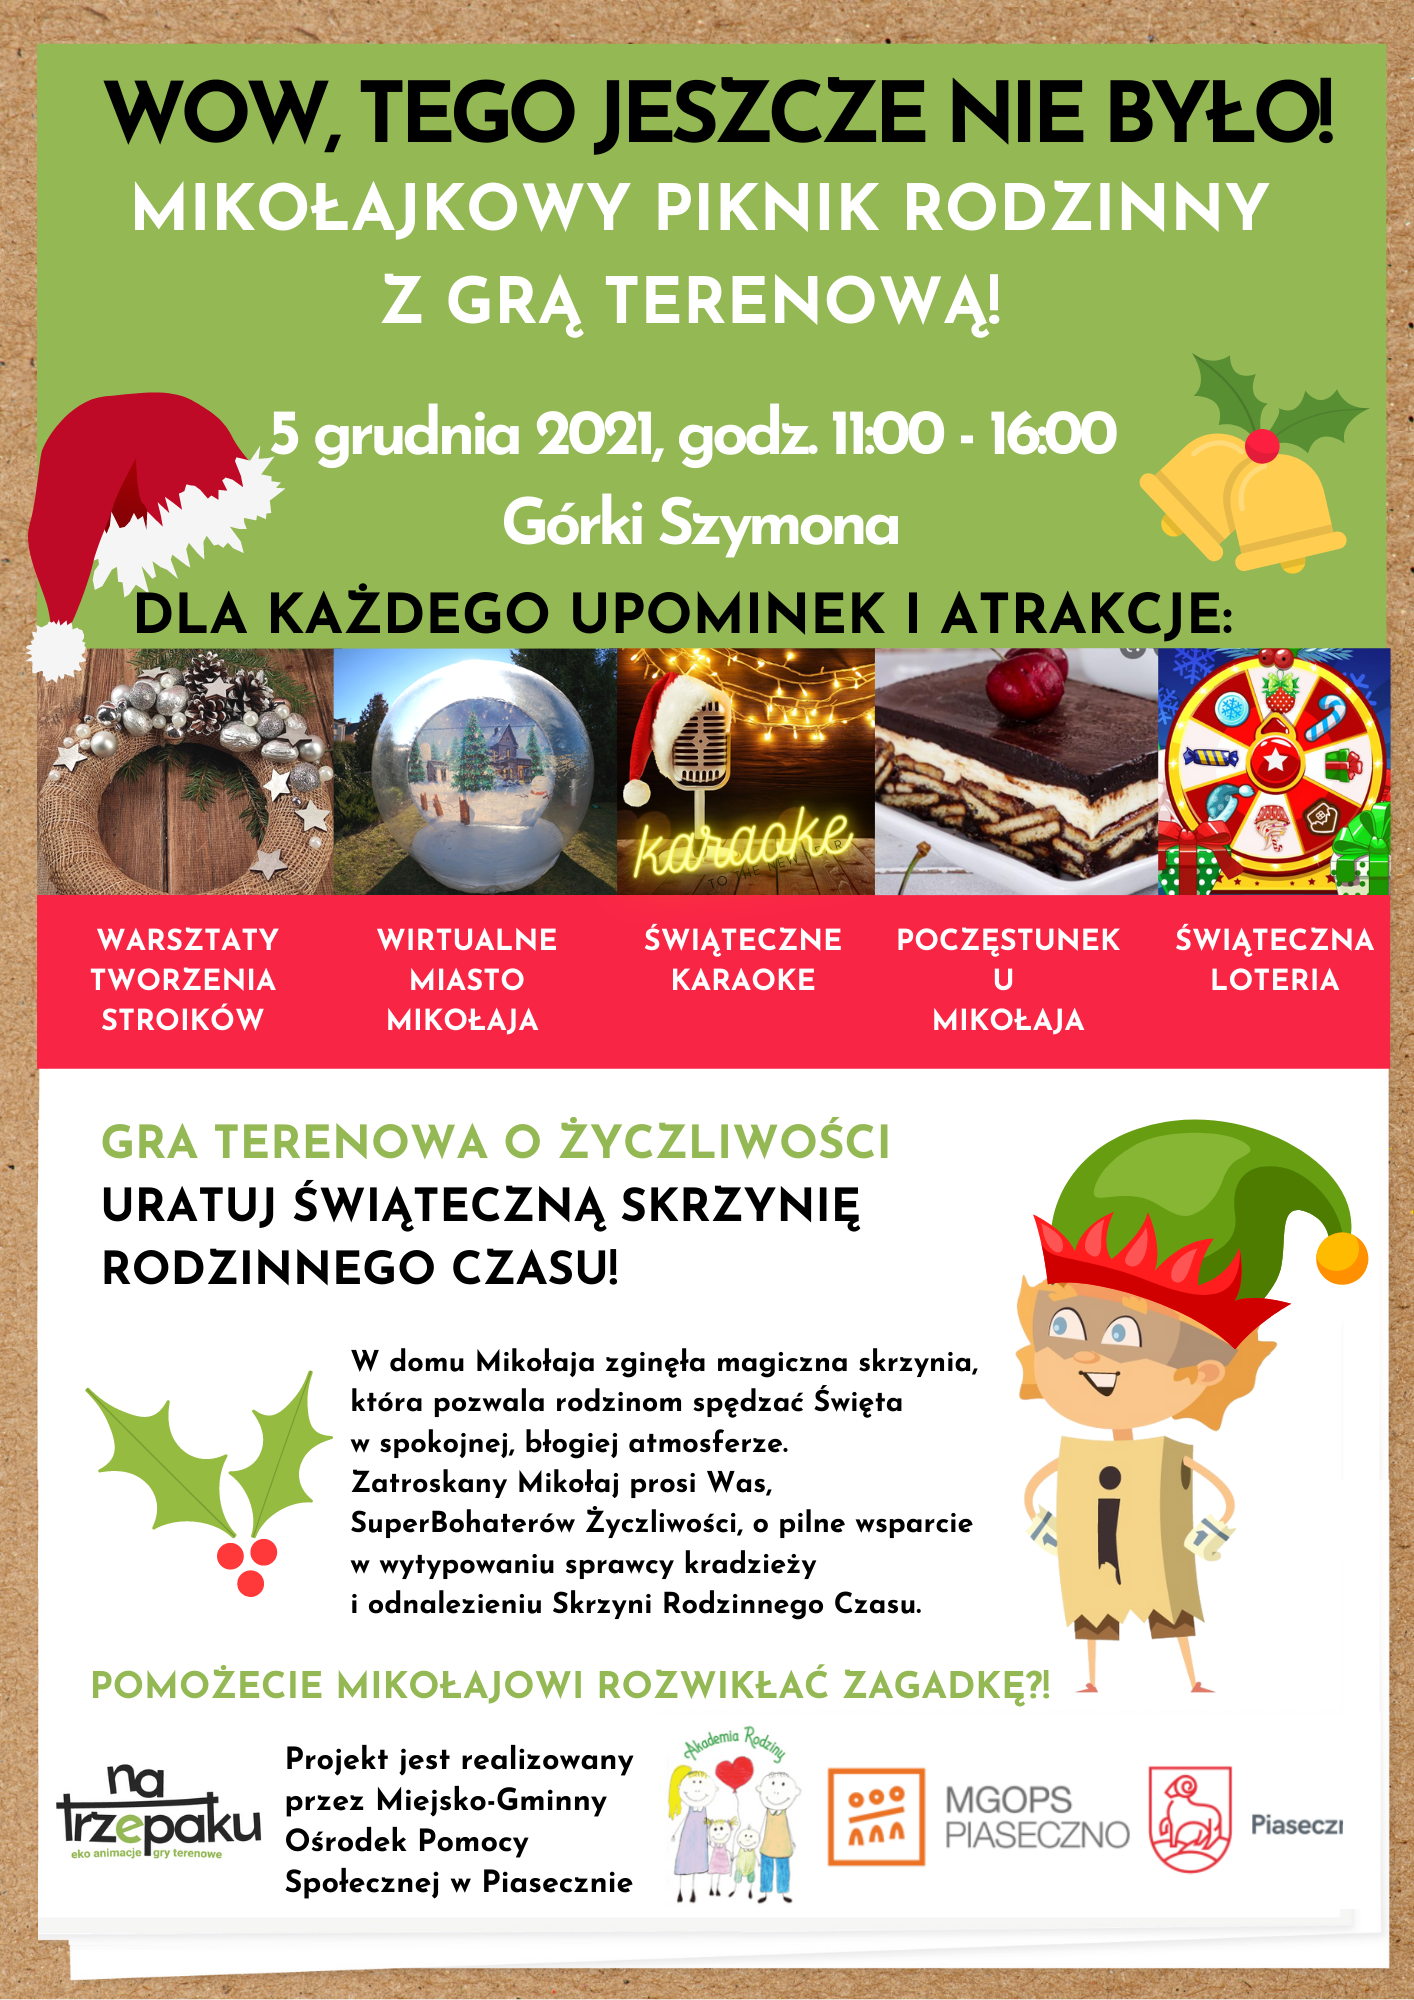 Mikołajkowy Piknik Rodzinny - "Świąteczne Miasto Rodzinnego Czasu". Na plakacie informacje na temat pikniku.